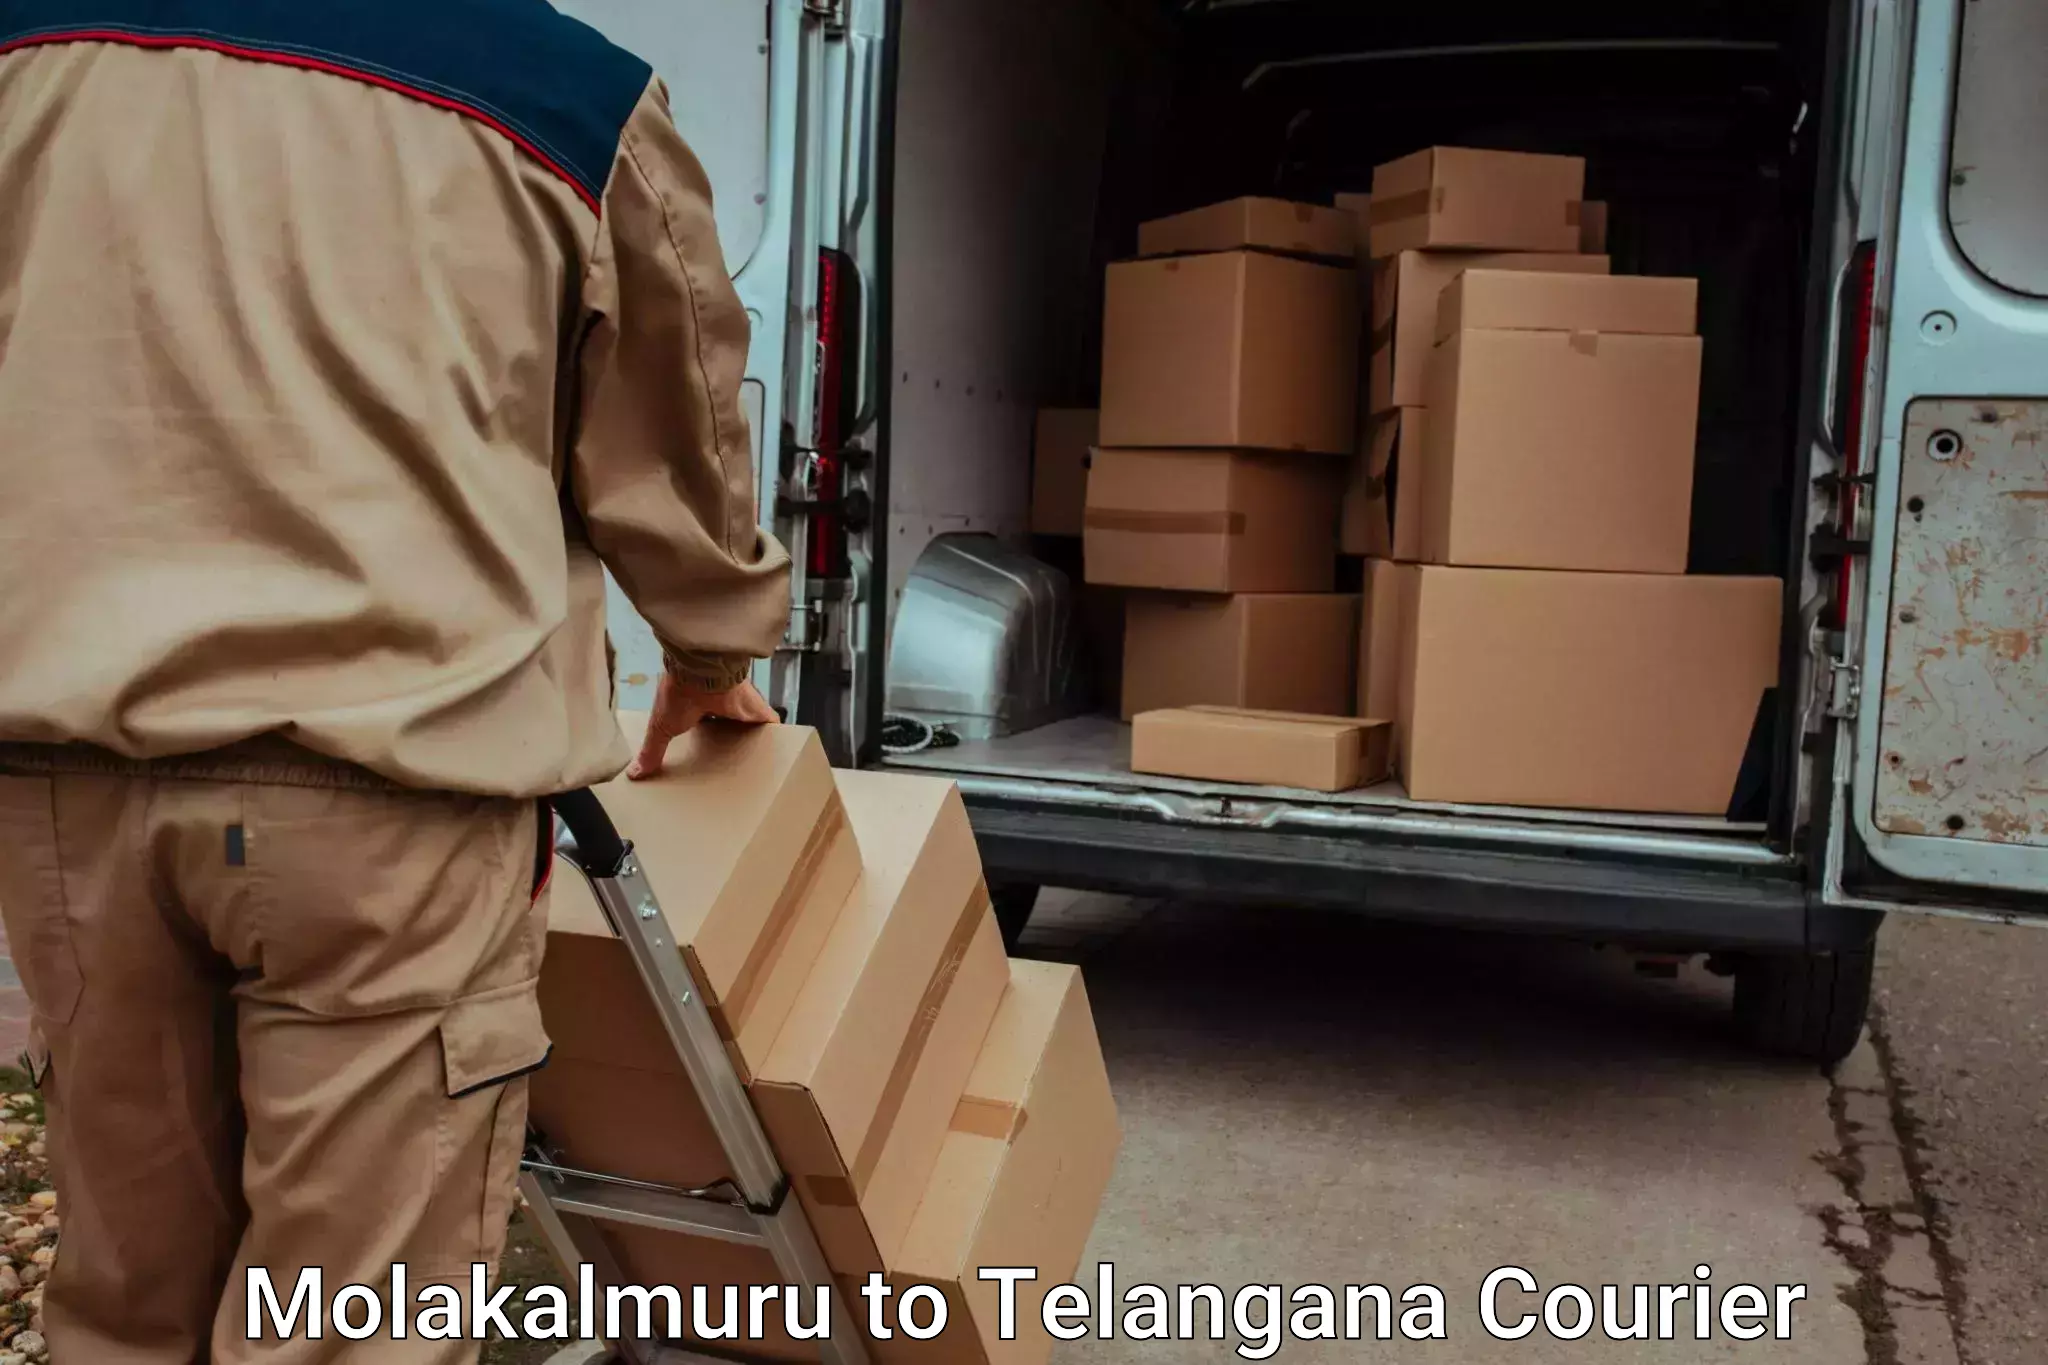 Luggage transport service Molakalmuru to Devarakonda